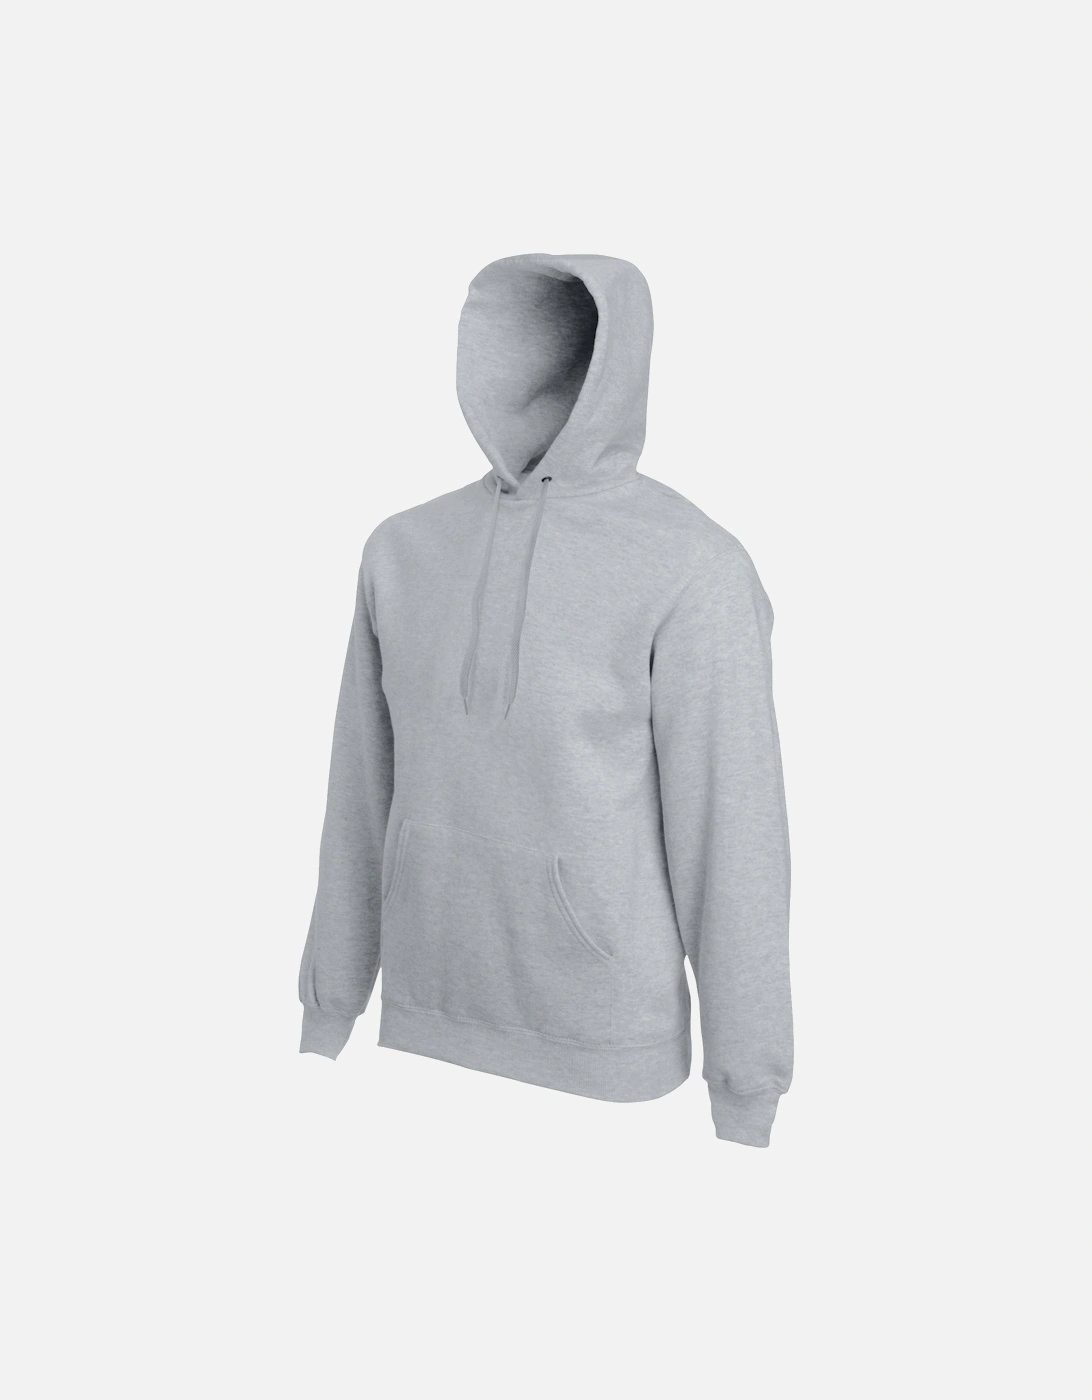 Mens Premium 70/30 Hooded Sweatshirt / Hoodie, 3 of 2